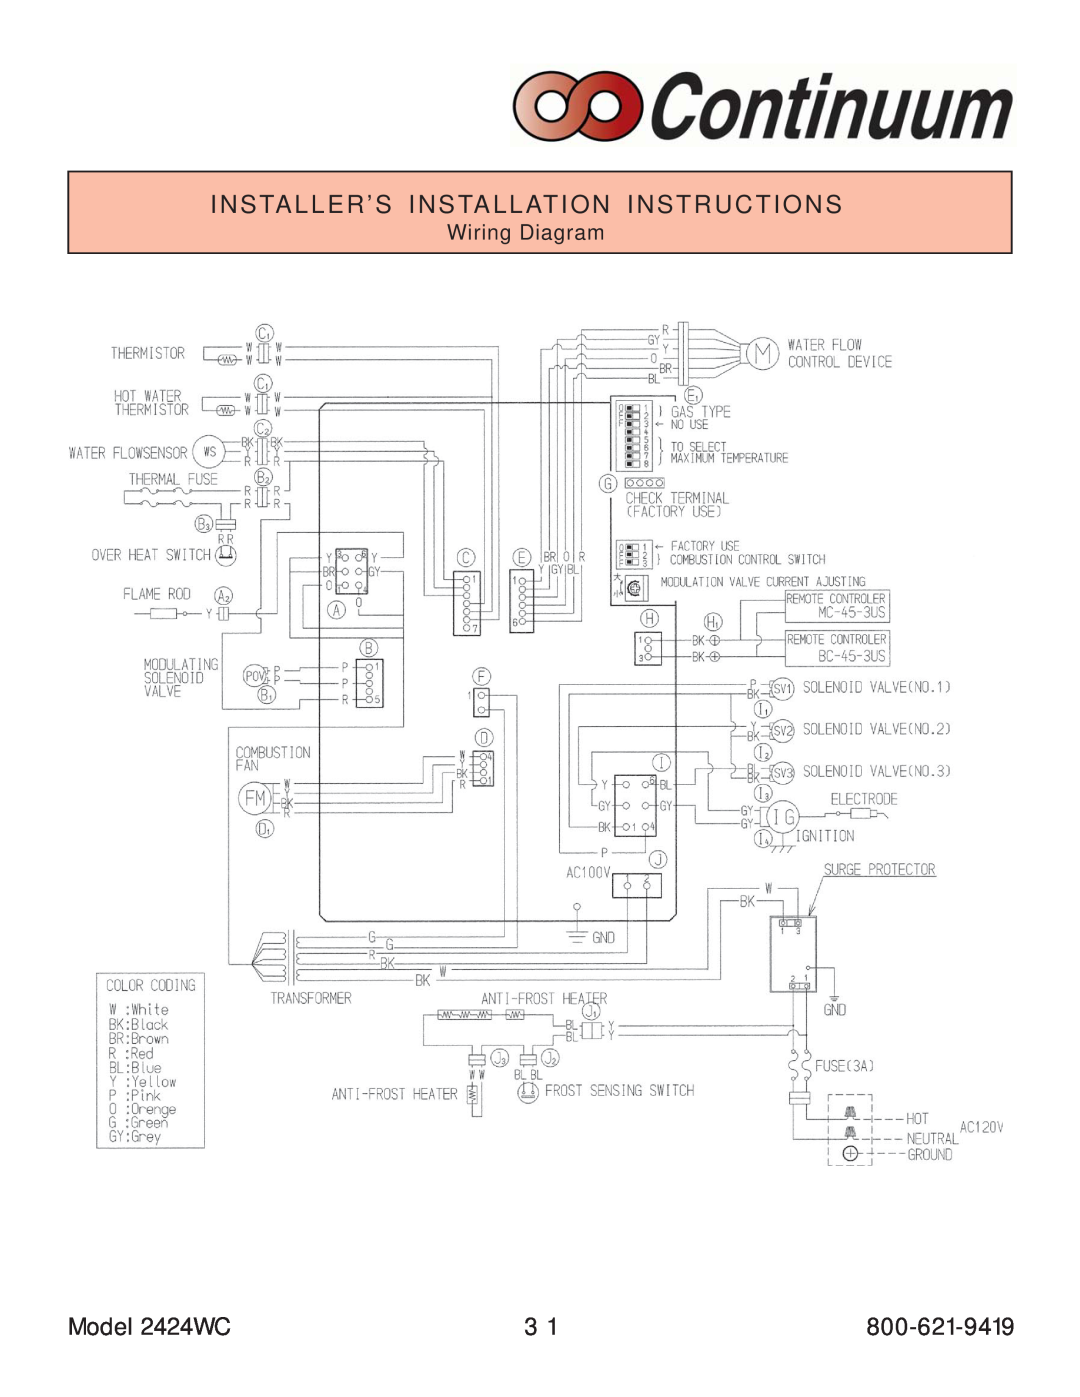 Rinnai manual Model 2424WC, Wiring Diagram 